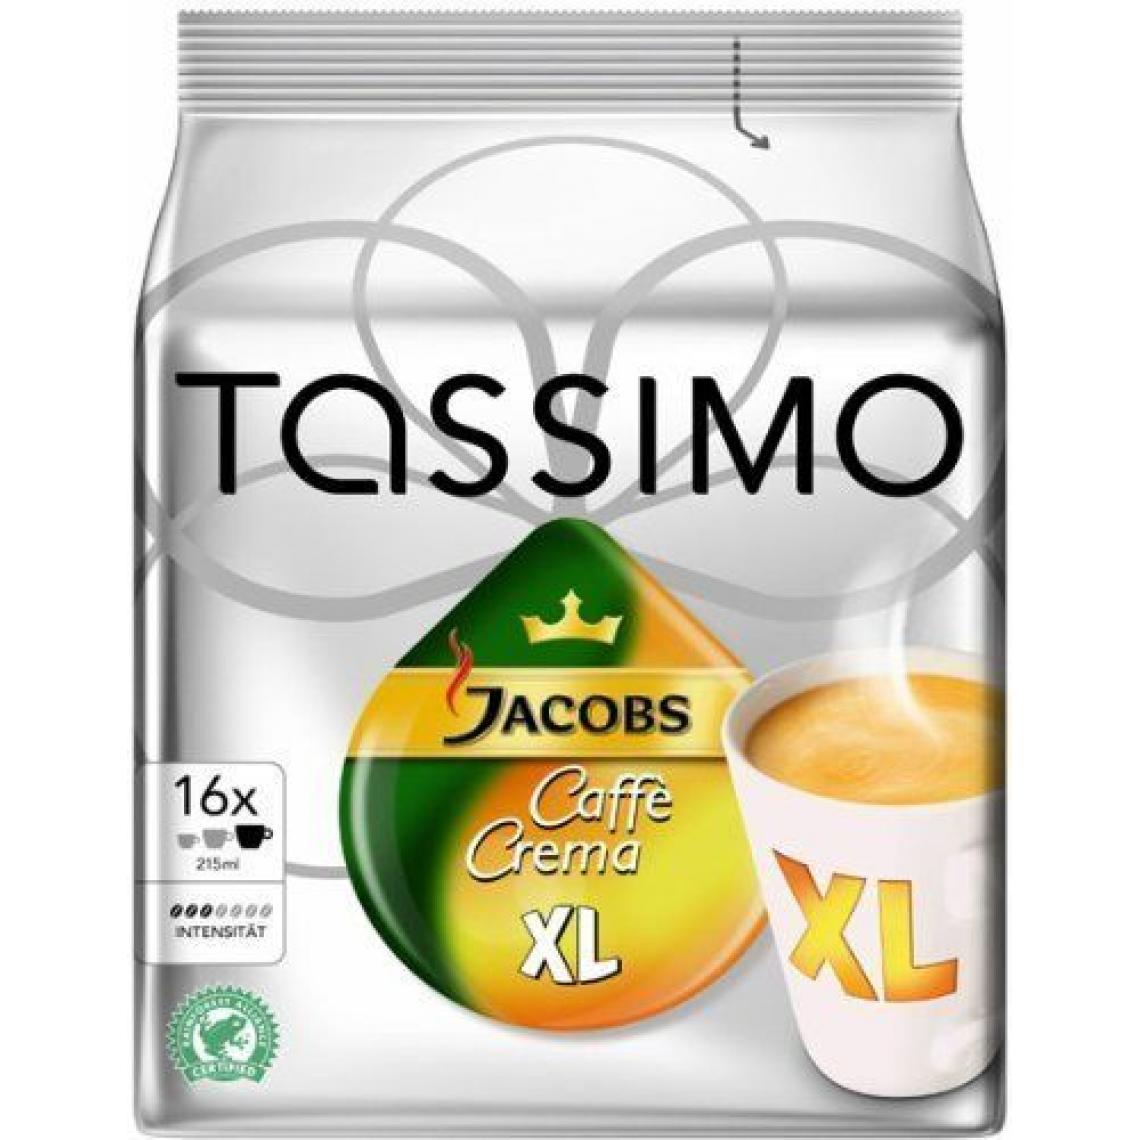 Tassimo - Tassimo 'Braun Caffè Crema' XL T-Disc - 16 disques - Dosette café